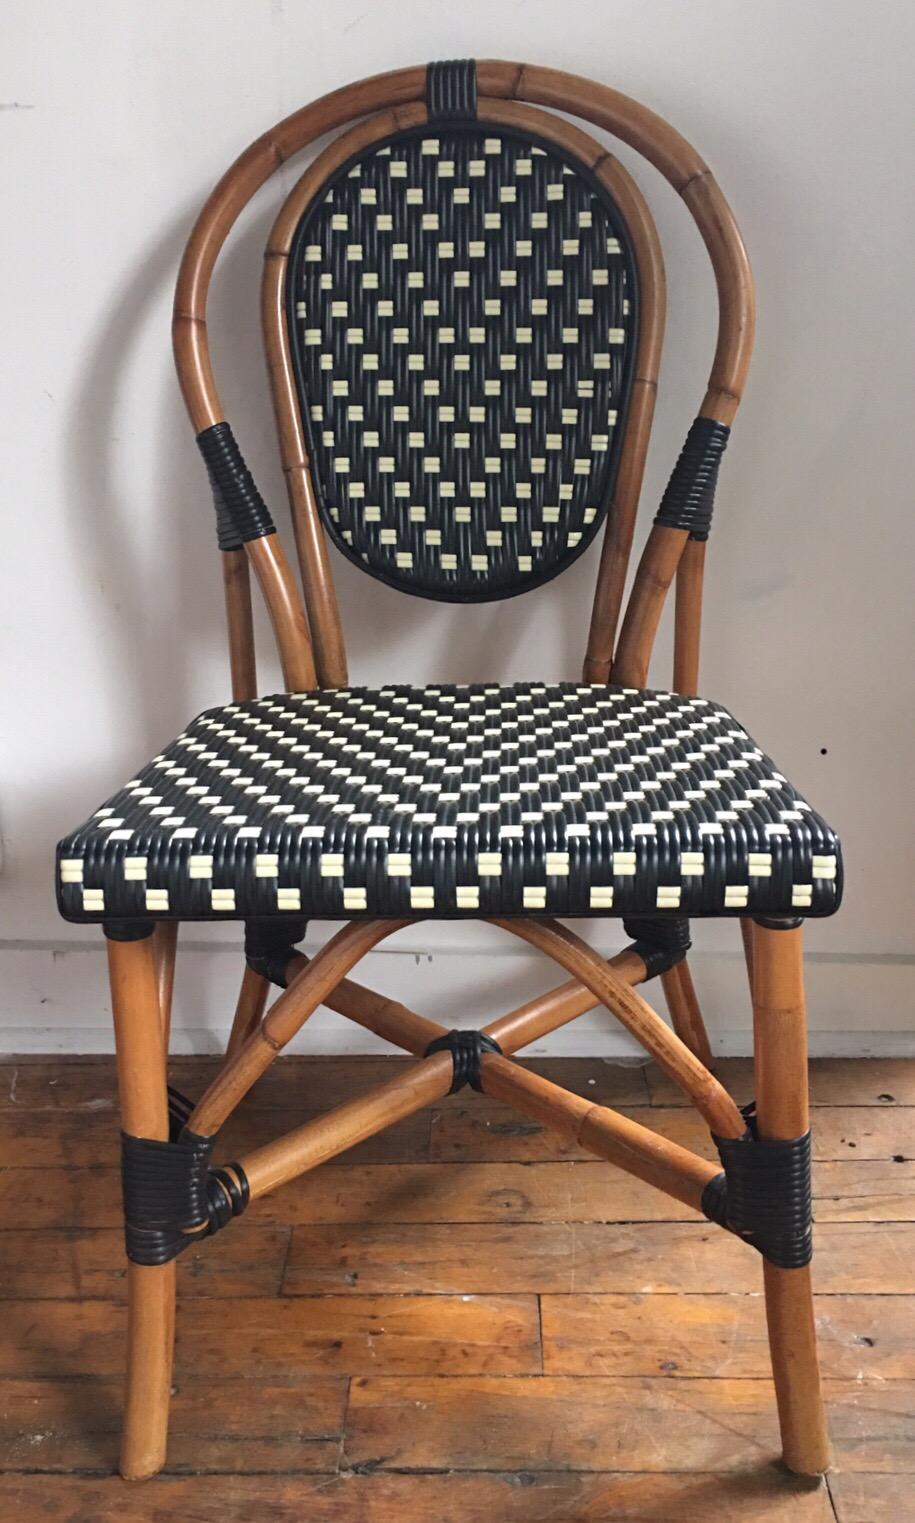 Chaises d'appoint bistro classiques de style français:: comme celles que l'on trouve dans un café parisien. Les cadres sont fabriqués à la main en canne pliée à la vapeur de Malacca/Manau:: avec des sièges et des dossiers en nylon tissé noir/ivoire.